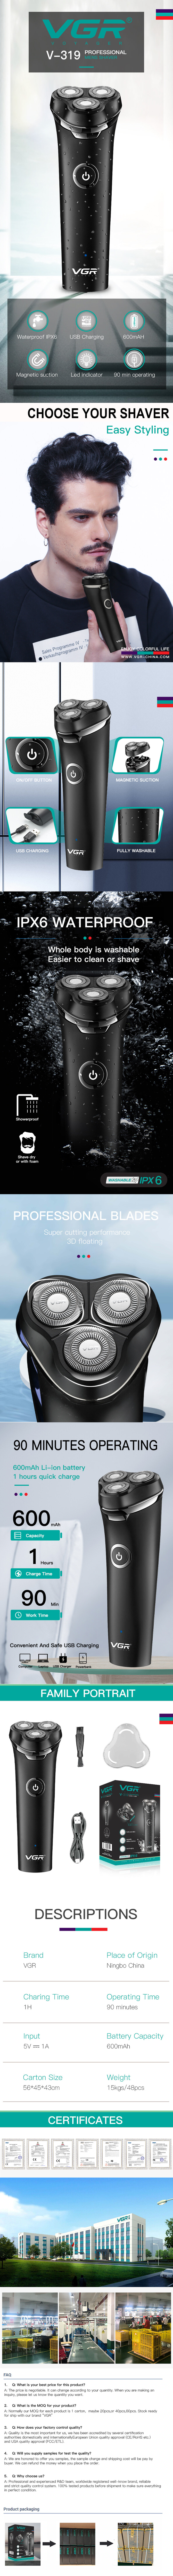 VGR V-319 washable shaver waterproof IPX6 for men electric shaver for men razor with LED display travel